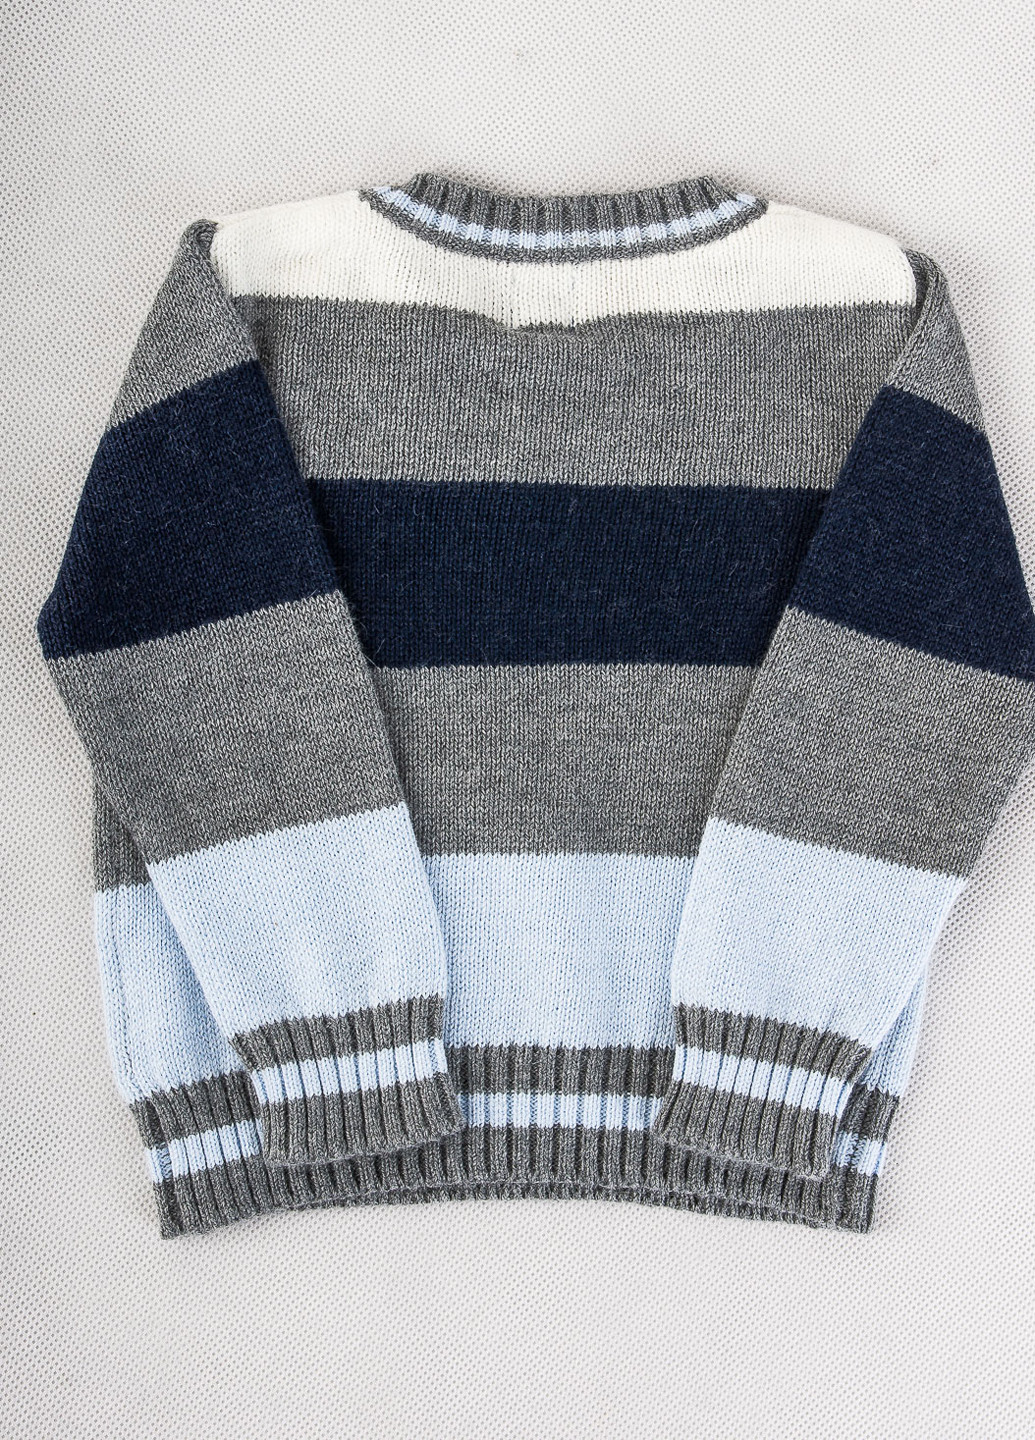 Комбинированный демисезонный пуловер пуловер Paper Moon